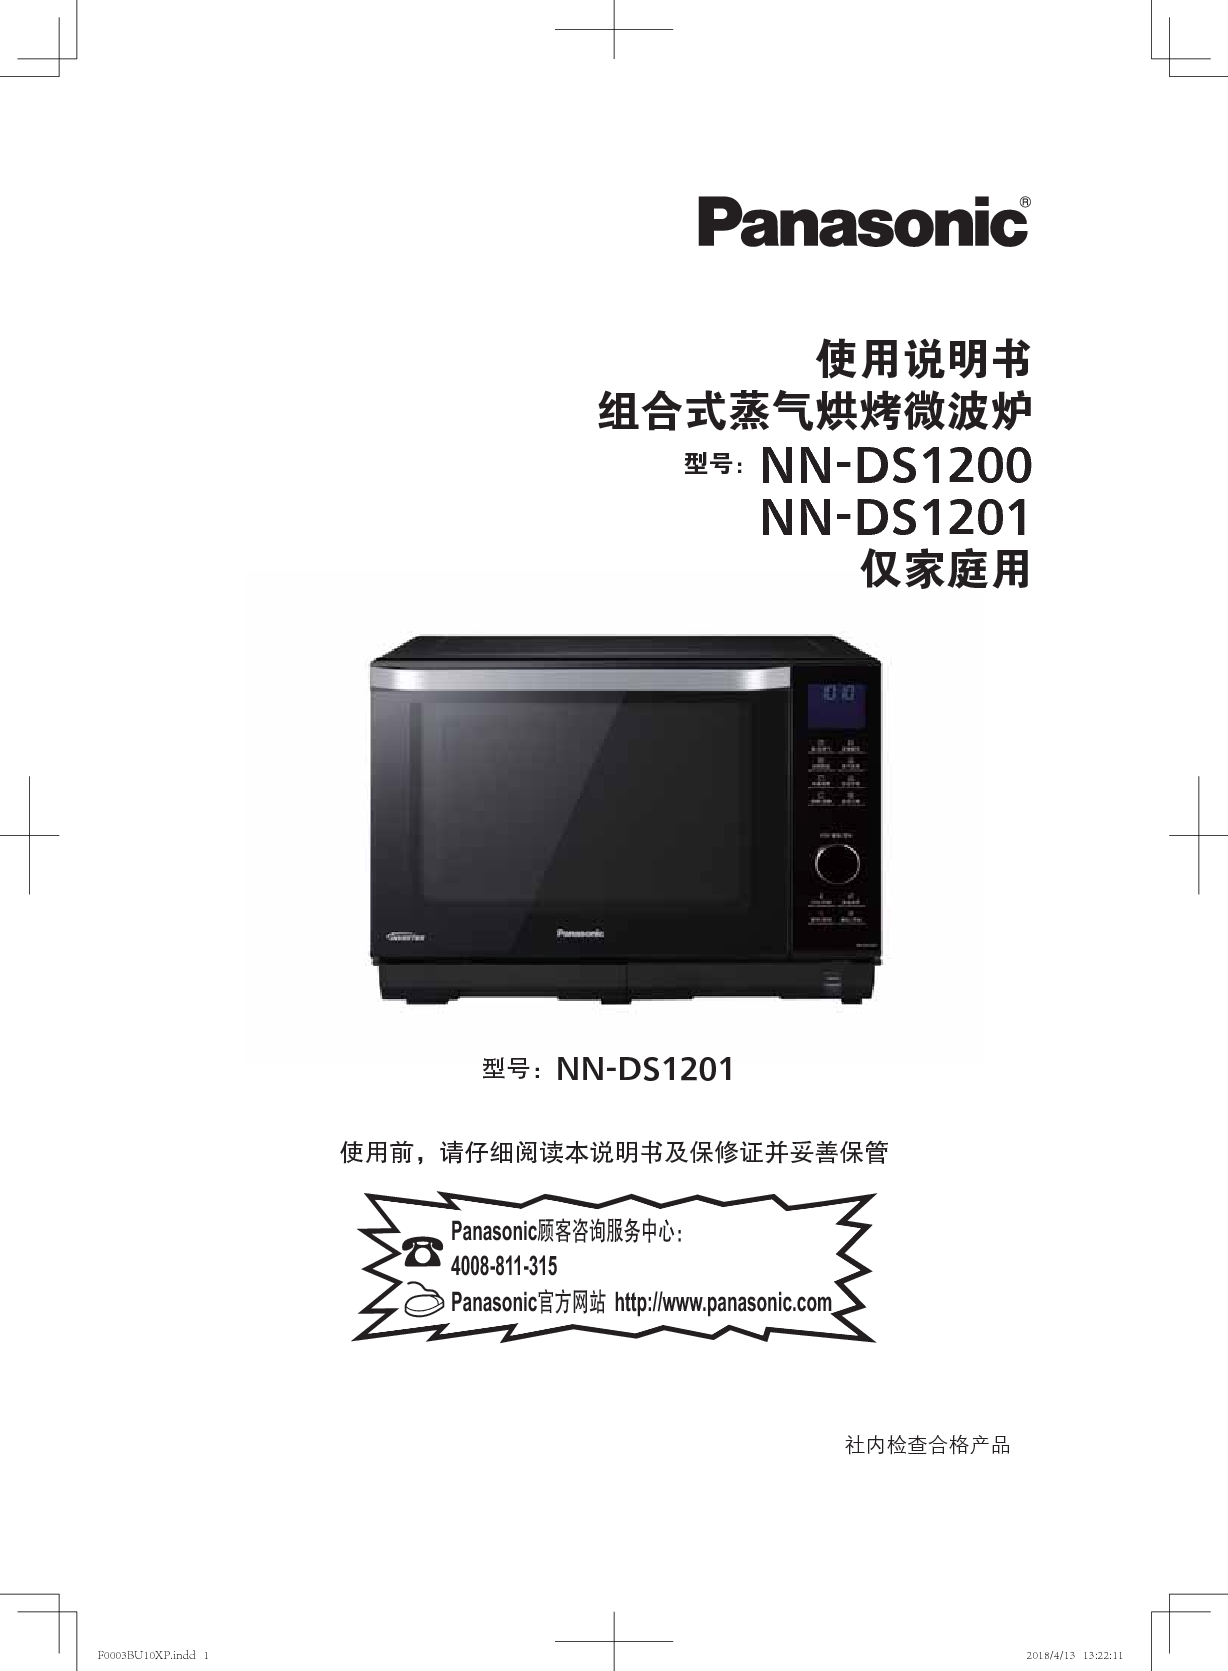 松下 Panasonic NN-DS1201 使用说明书 封面